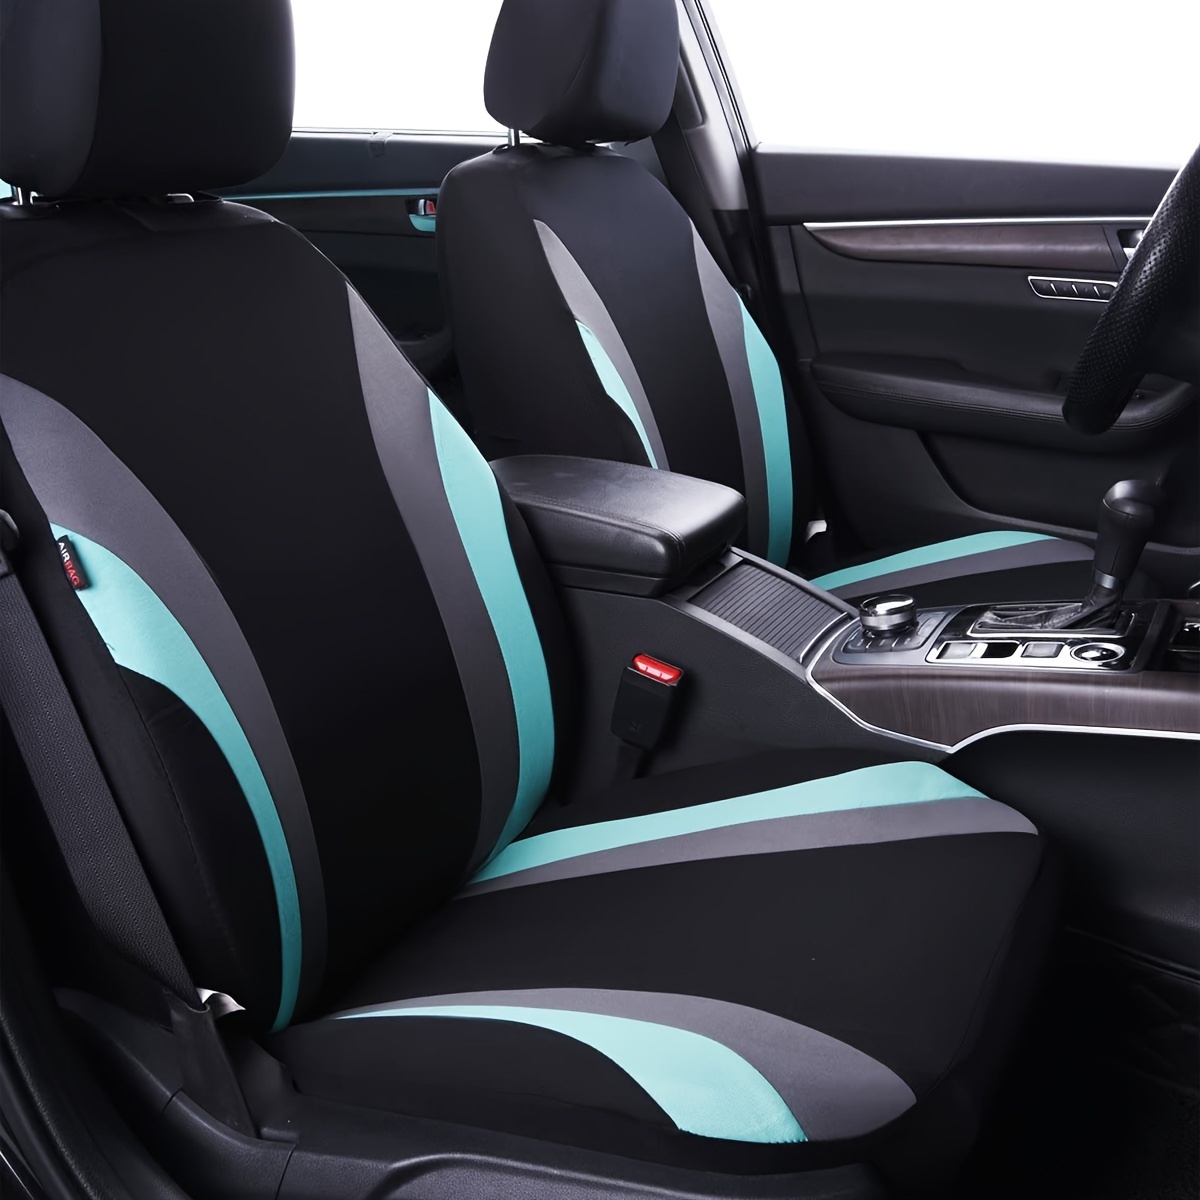 Universal Echt Leder Auto Sitzbezug schwarz für fast alle PKW, für